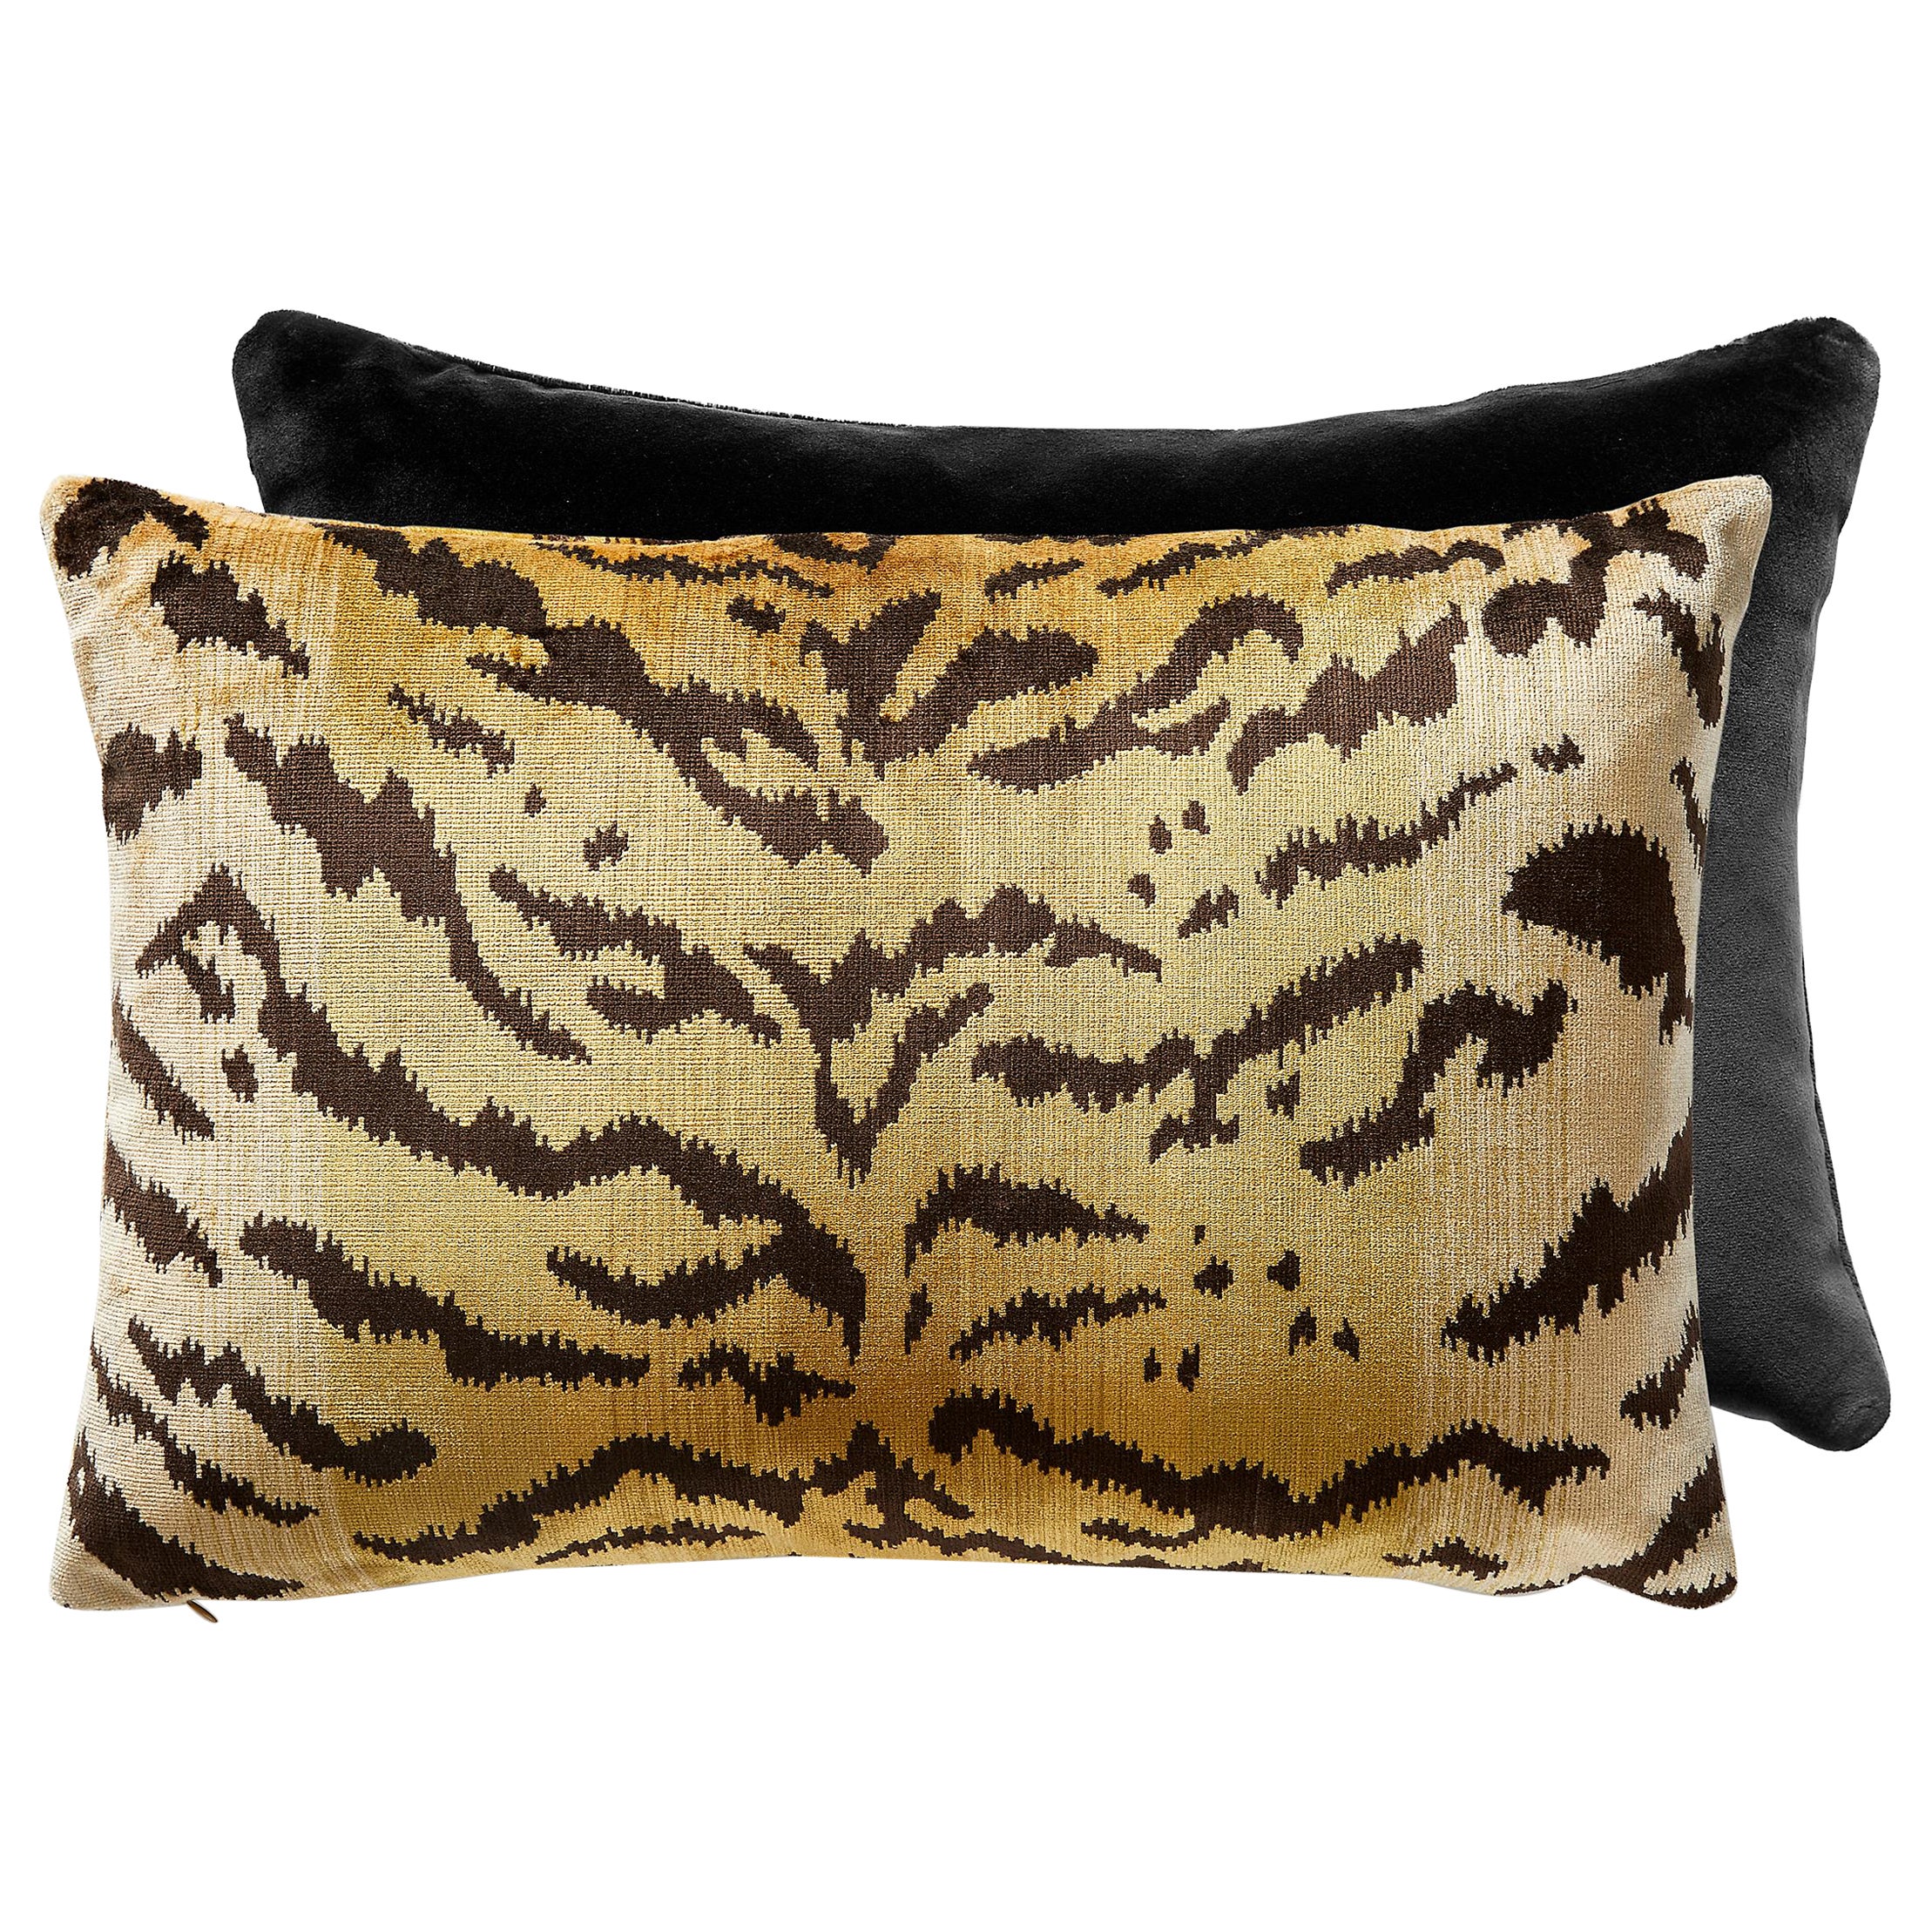 Tigre/Indus Lumbar Pillow